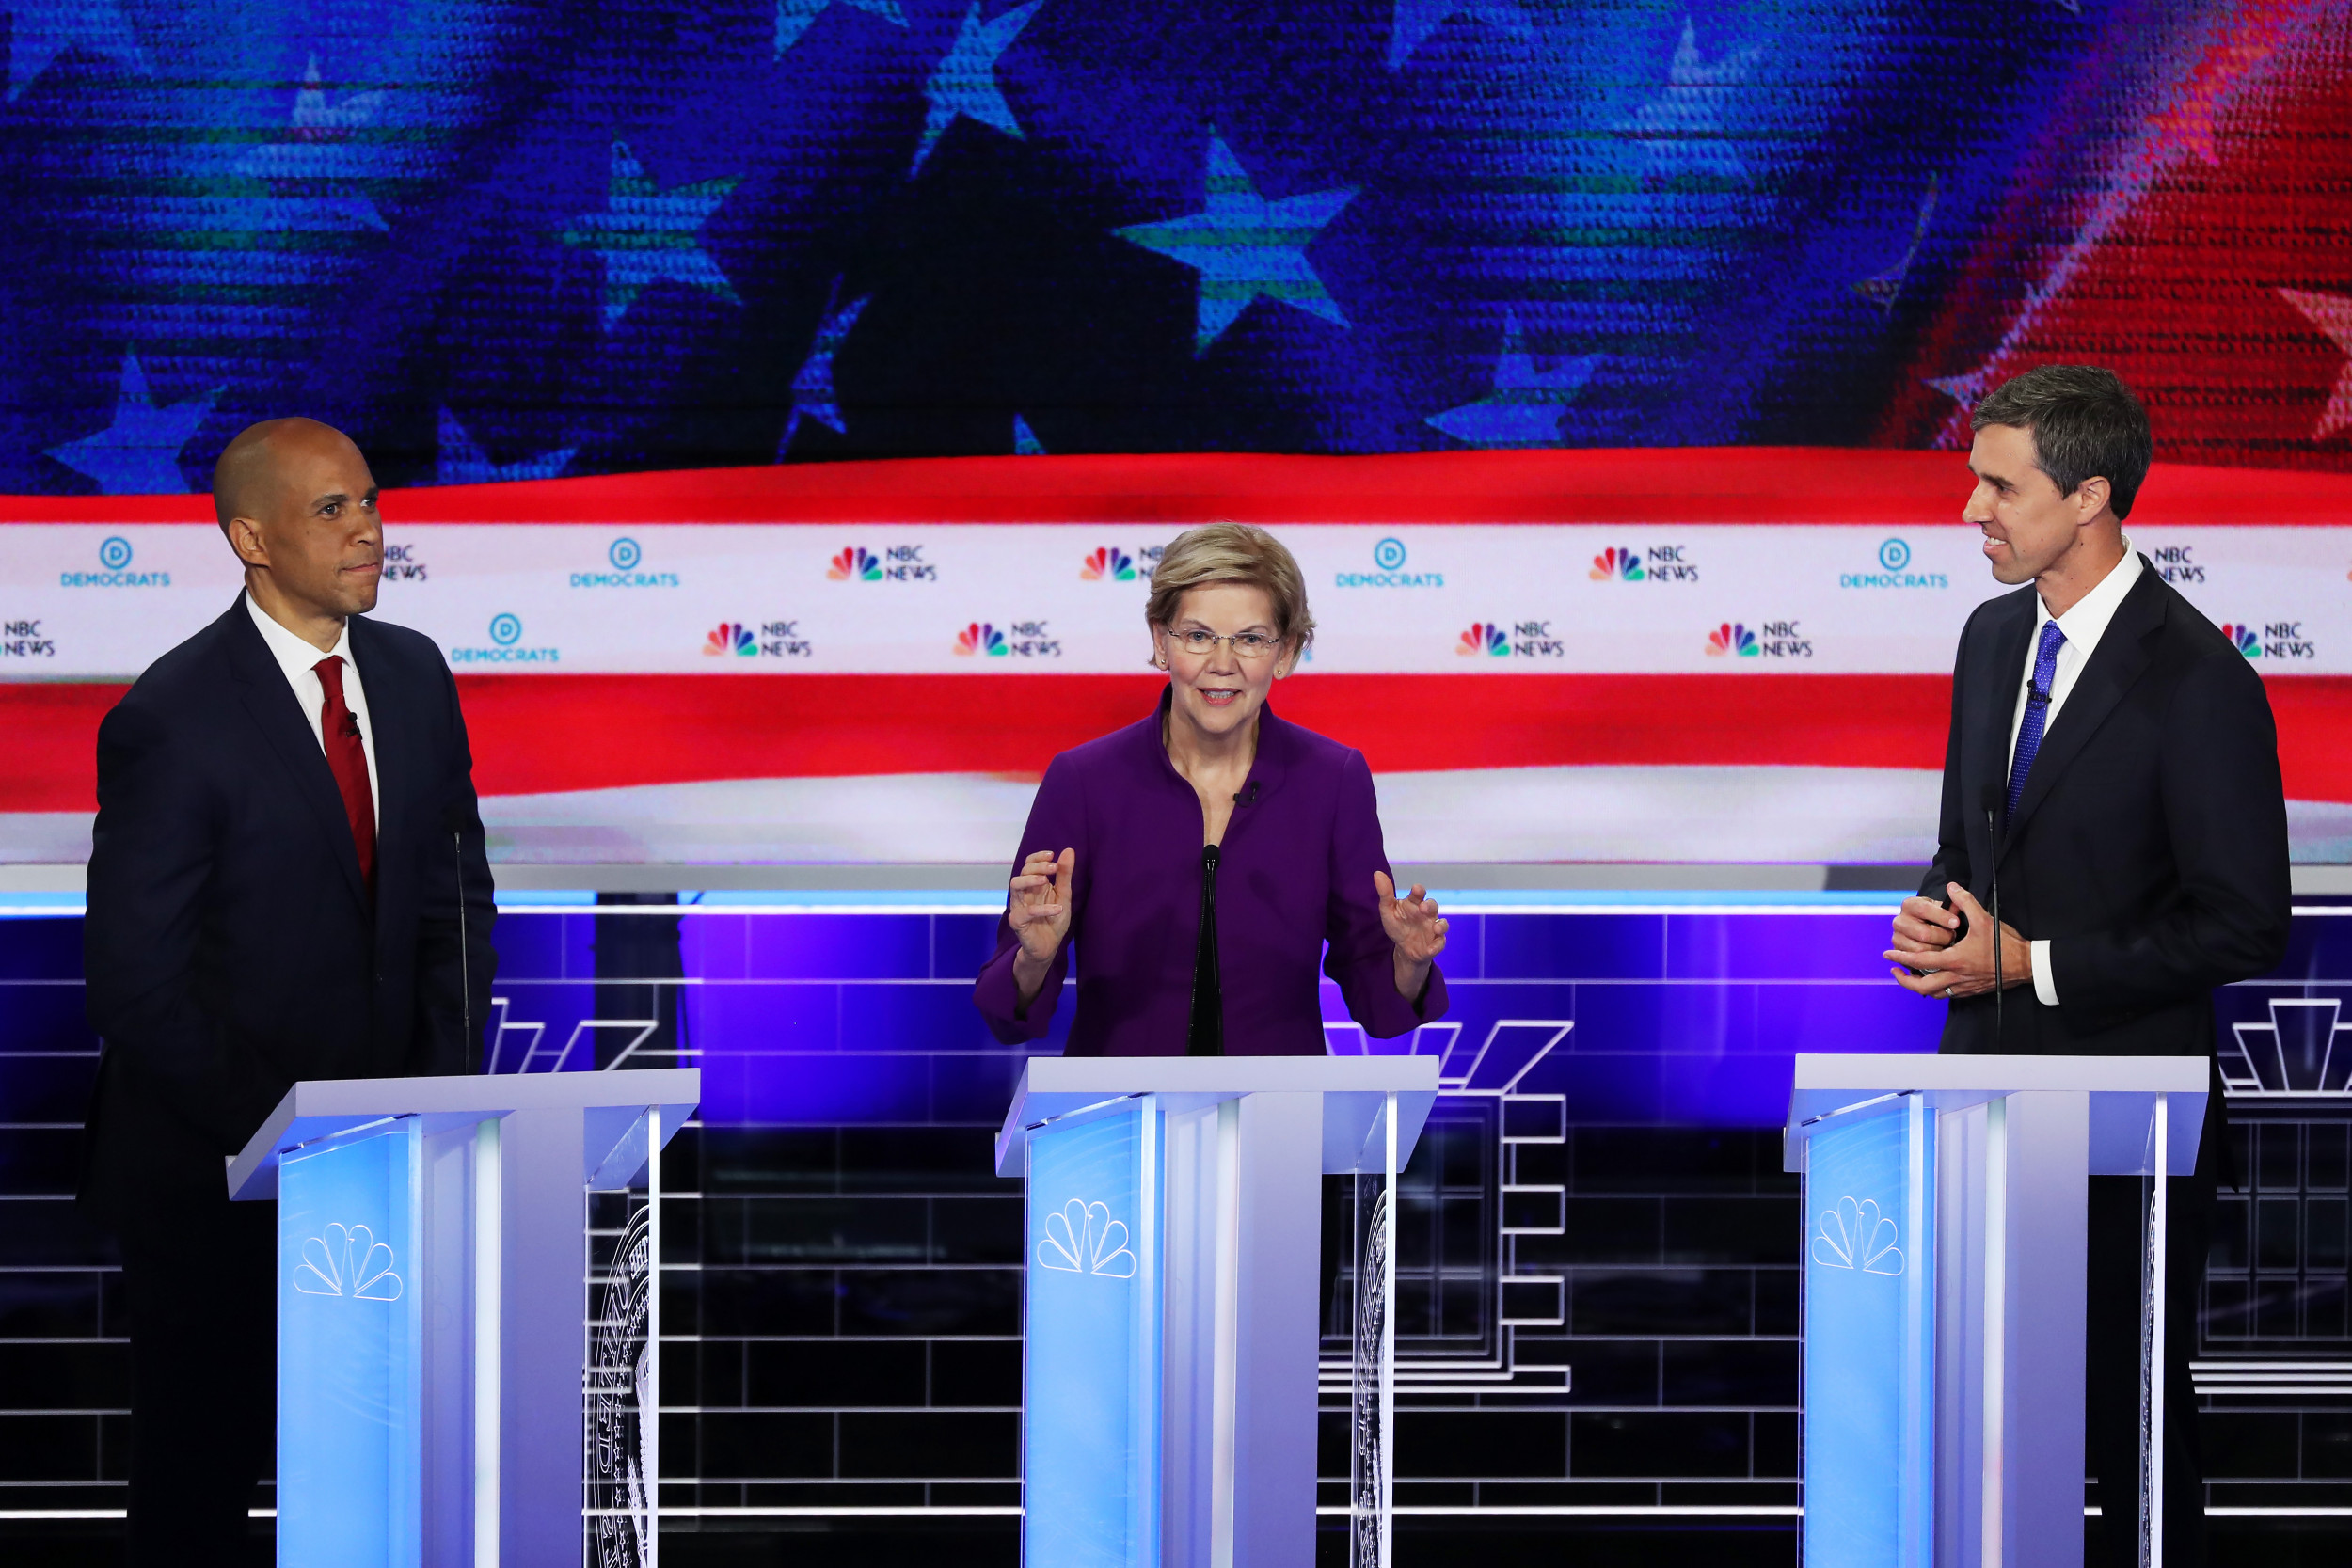 Democratic Debate What Will Biden, Warren, Sanders Do for